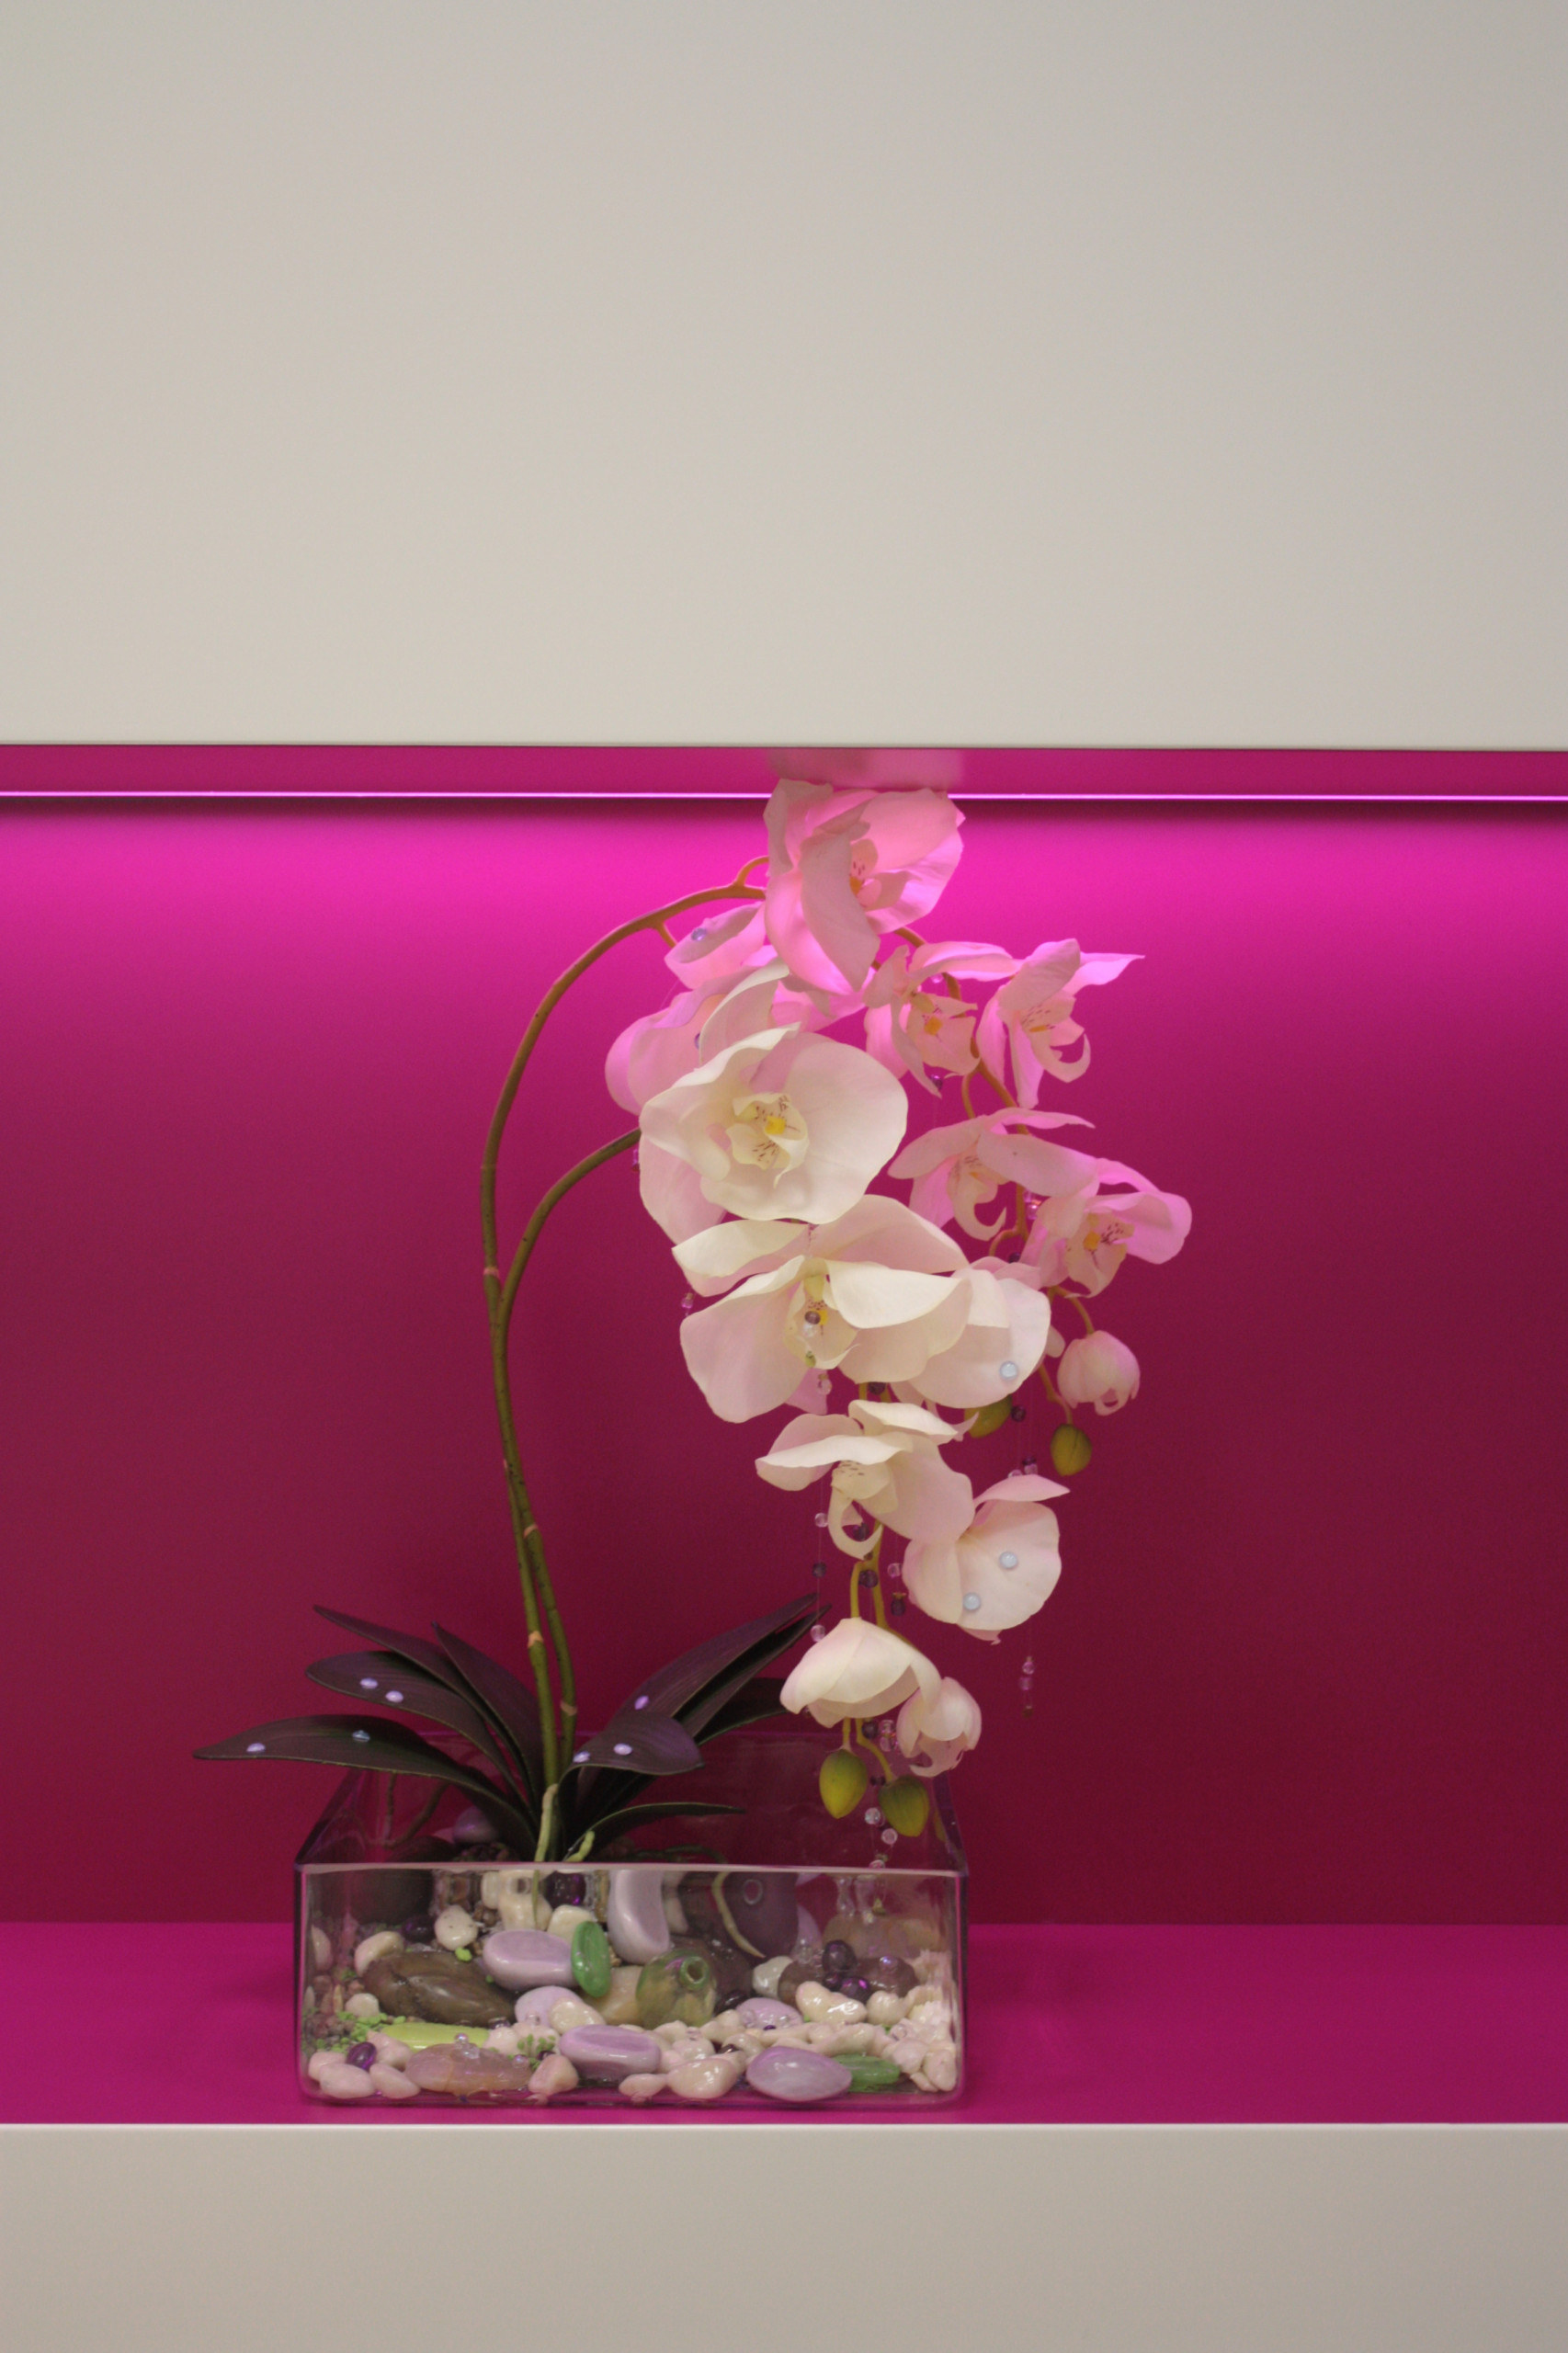 Цветы искусственные декоративные Букет роз (18 бутонов, крупные листья) 40 см